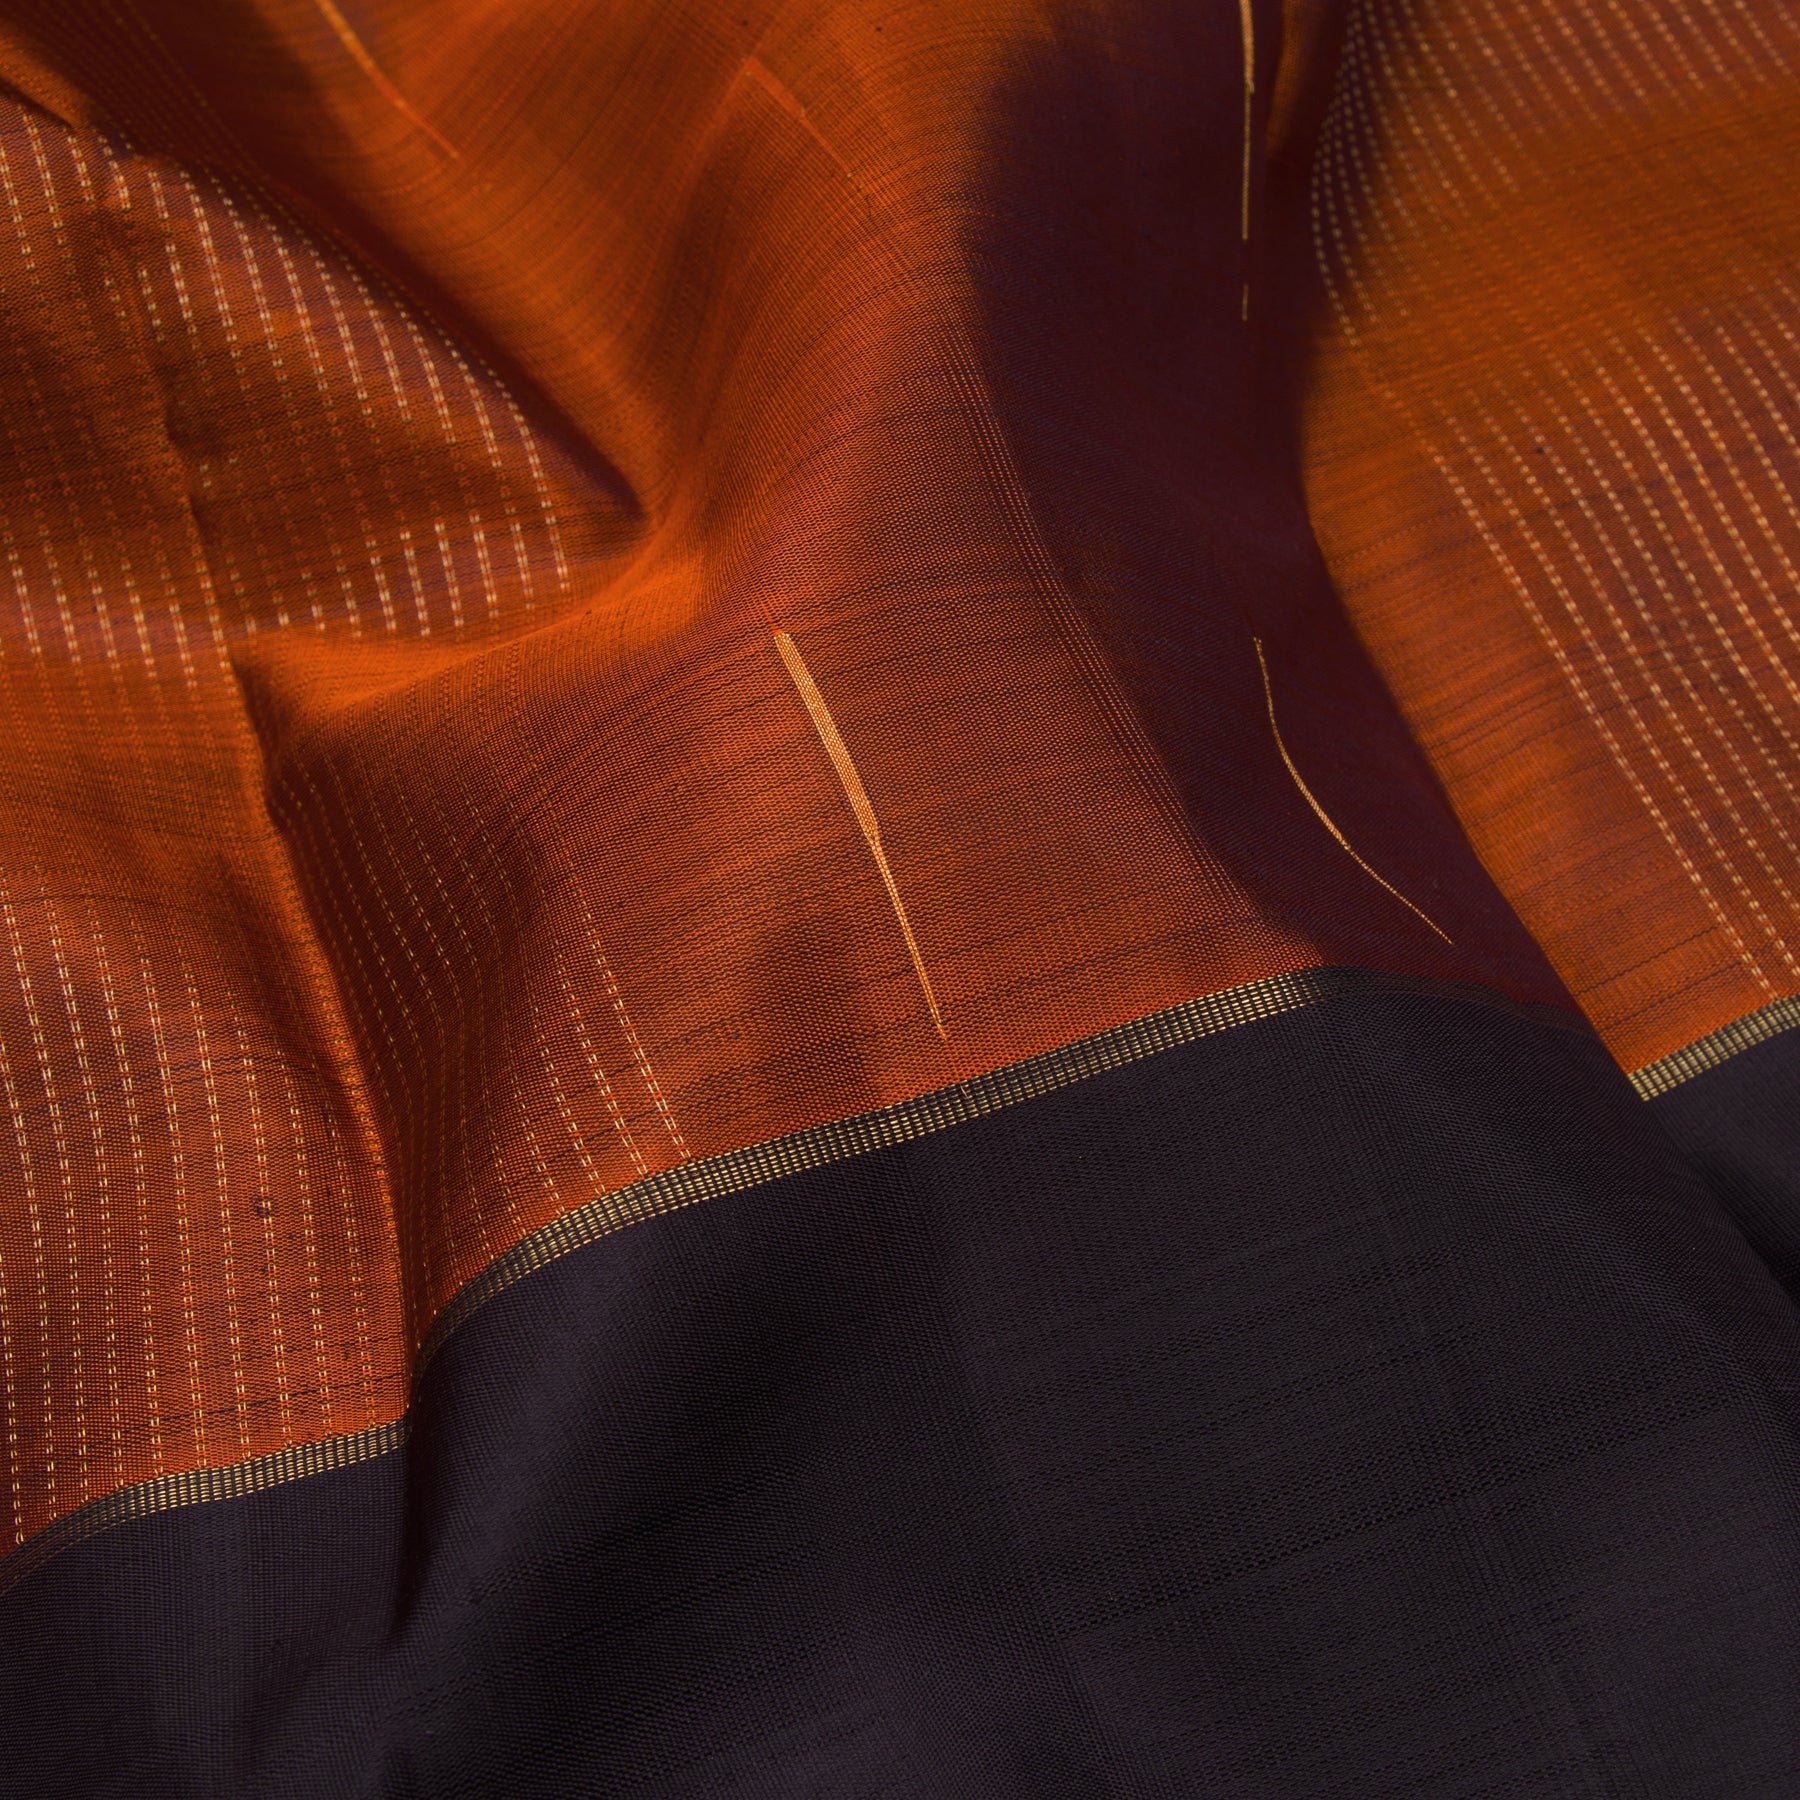 Kanakavalli Kanjivaram Silk Sari 23-599-HS001-01983 - Fabric View